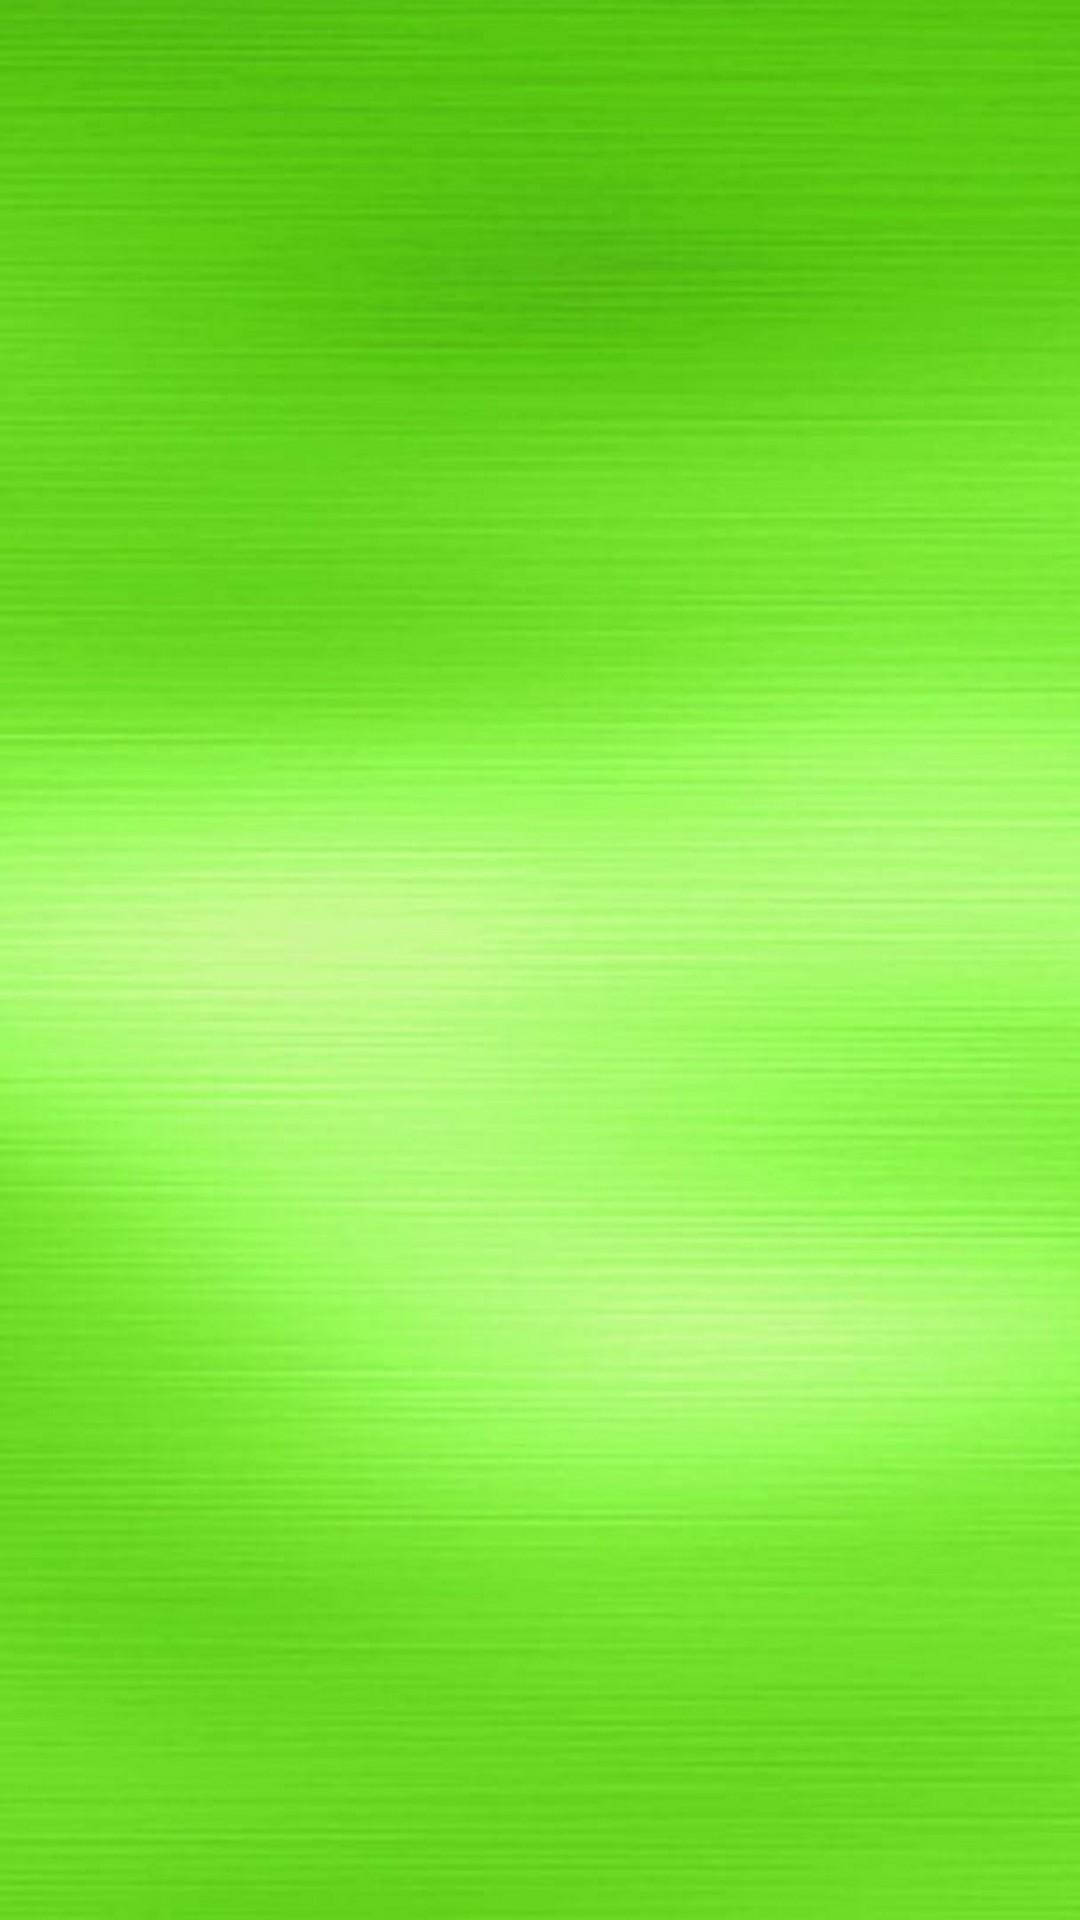 Greengradient: Ljusgrön Till Ljusare Grön Gradient. Wallpaper